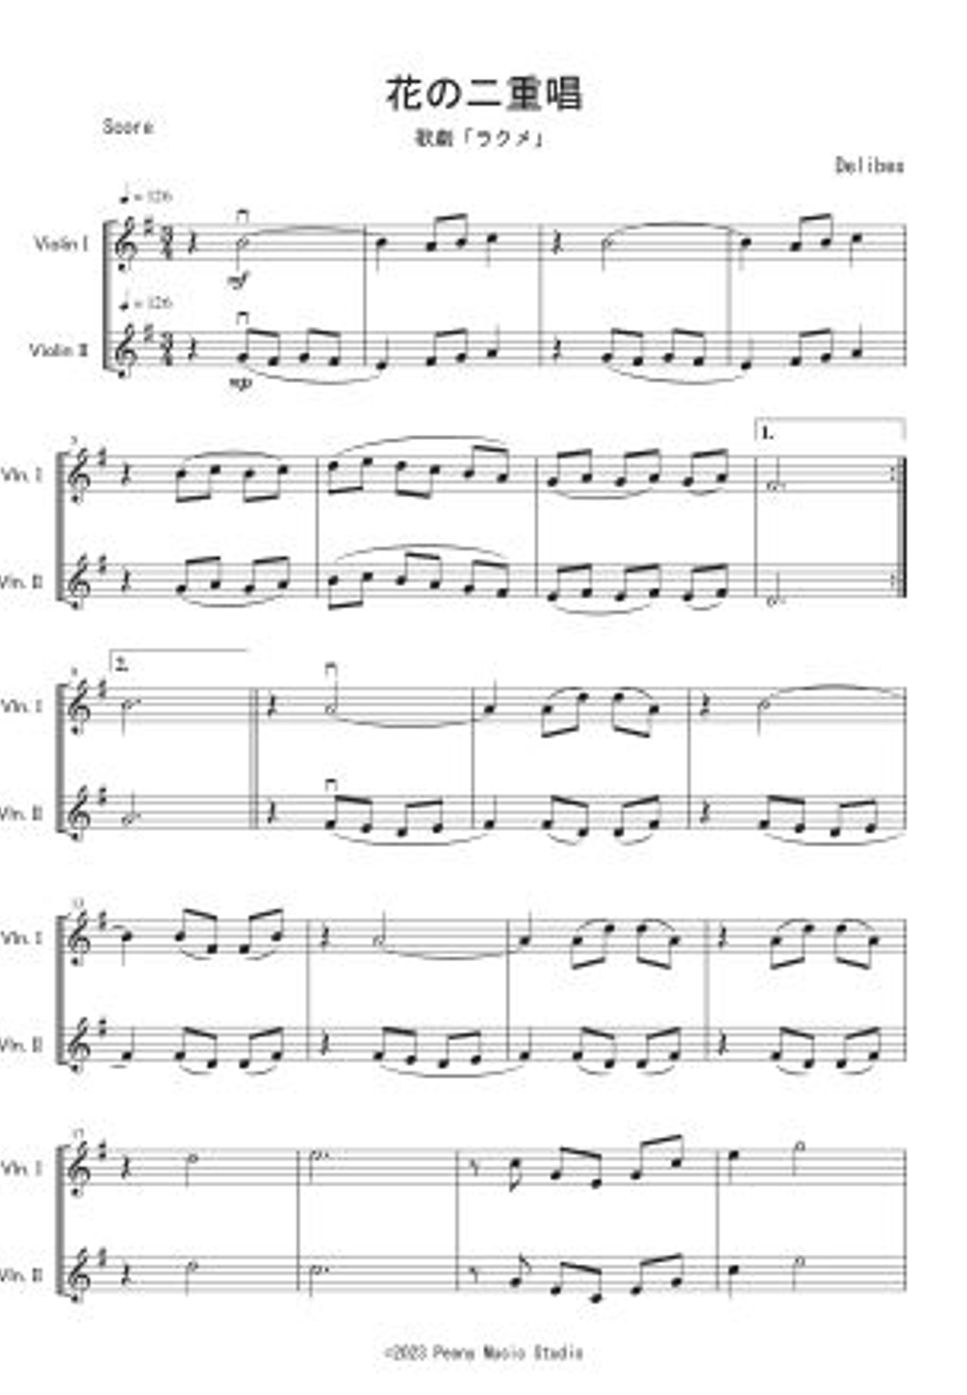 ドリーブ - 歌劇「ラクメ」より花の二重唱 (ヴァイオリン二重奏) by Peony